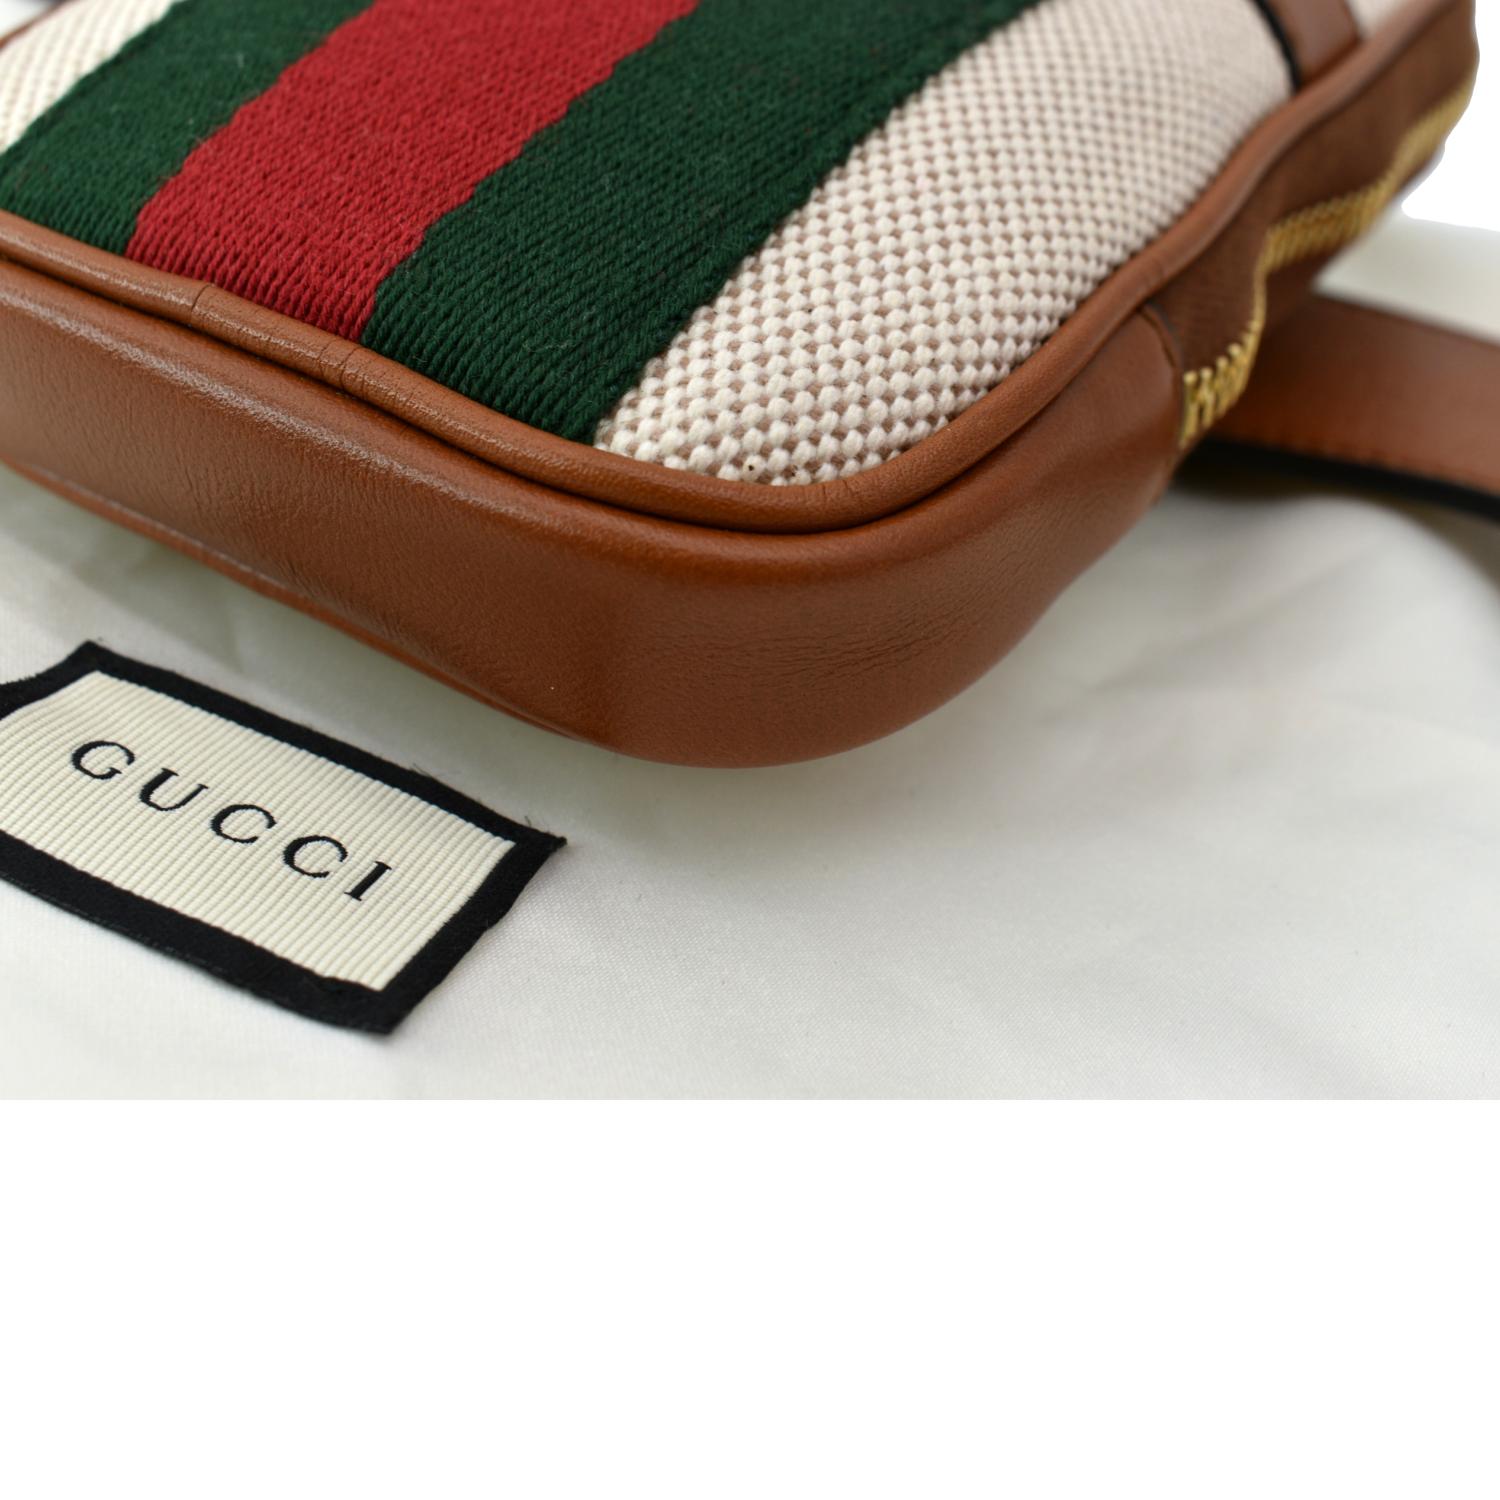 Gucci, Bags, Final Sale Gucci Vintage Double Belt Bag